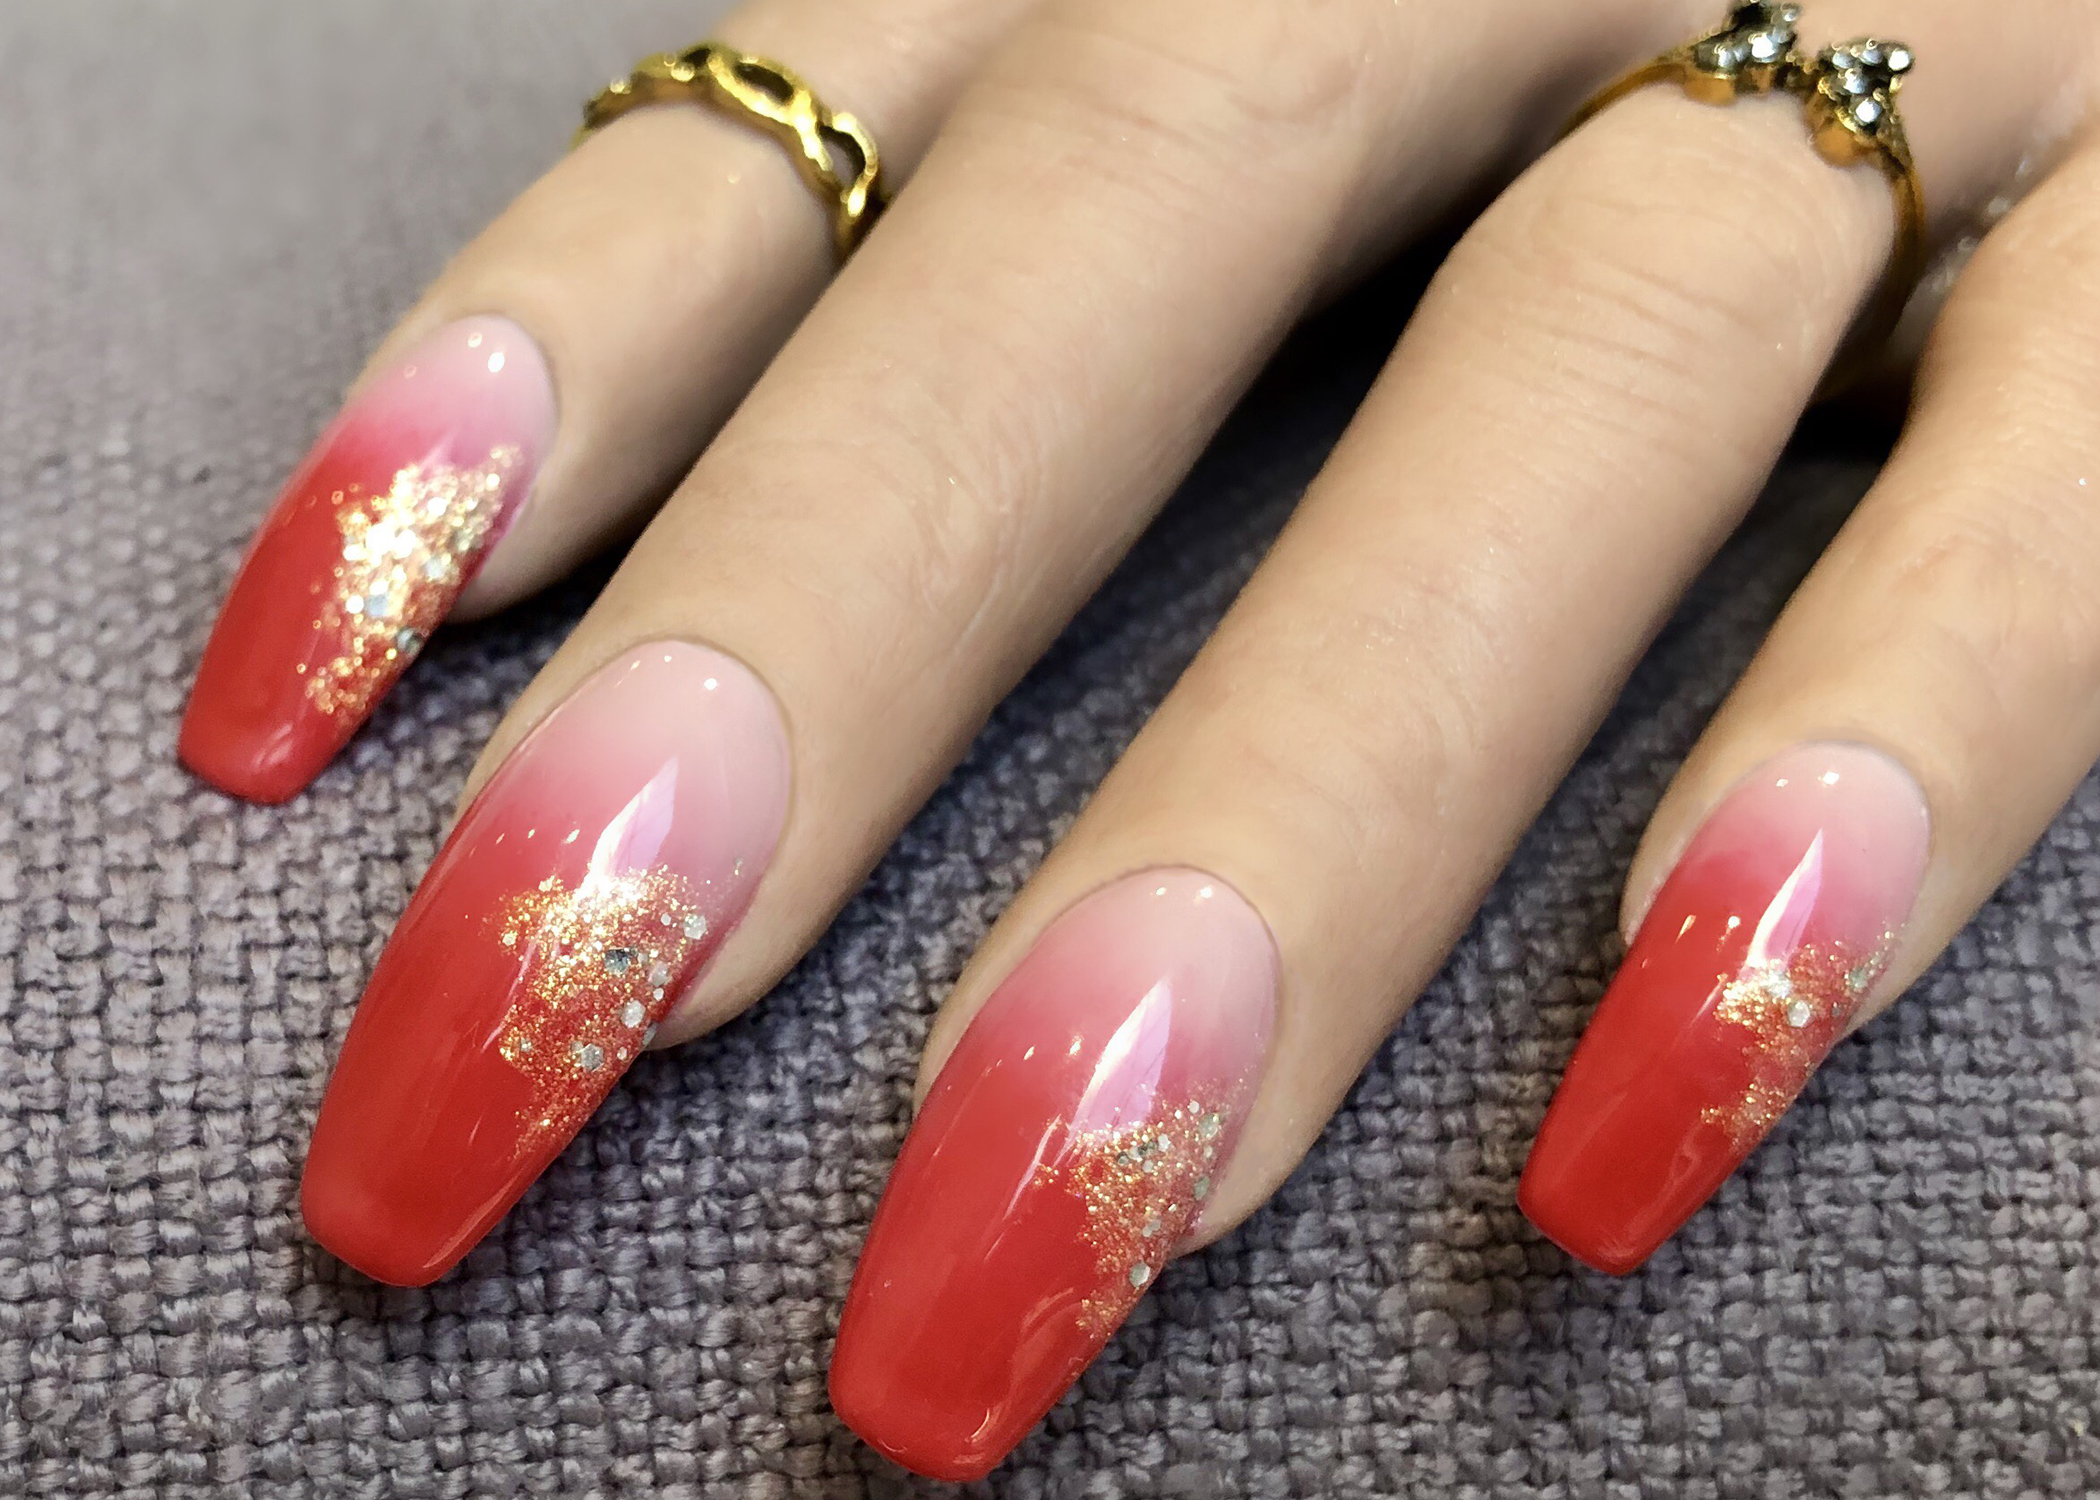 Thiết kế nail art Red Hot Ombré là lựa chọn tuyệt vời cho những cô nàng đam mê sự nổi bật. Sự kết hợp độc đáo giữa màu đỏ và cam, kết hợp với kỹ thuật dàn tán hoàn hảo sẽ tạo nên một đôi tay đích thực là tuyệt phẩm nghệ thuật và sẽ khiến bạn trở thành tâm điểm của tất cả những ai xung quanh.